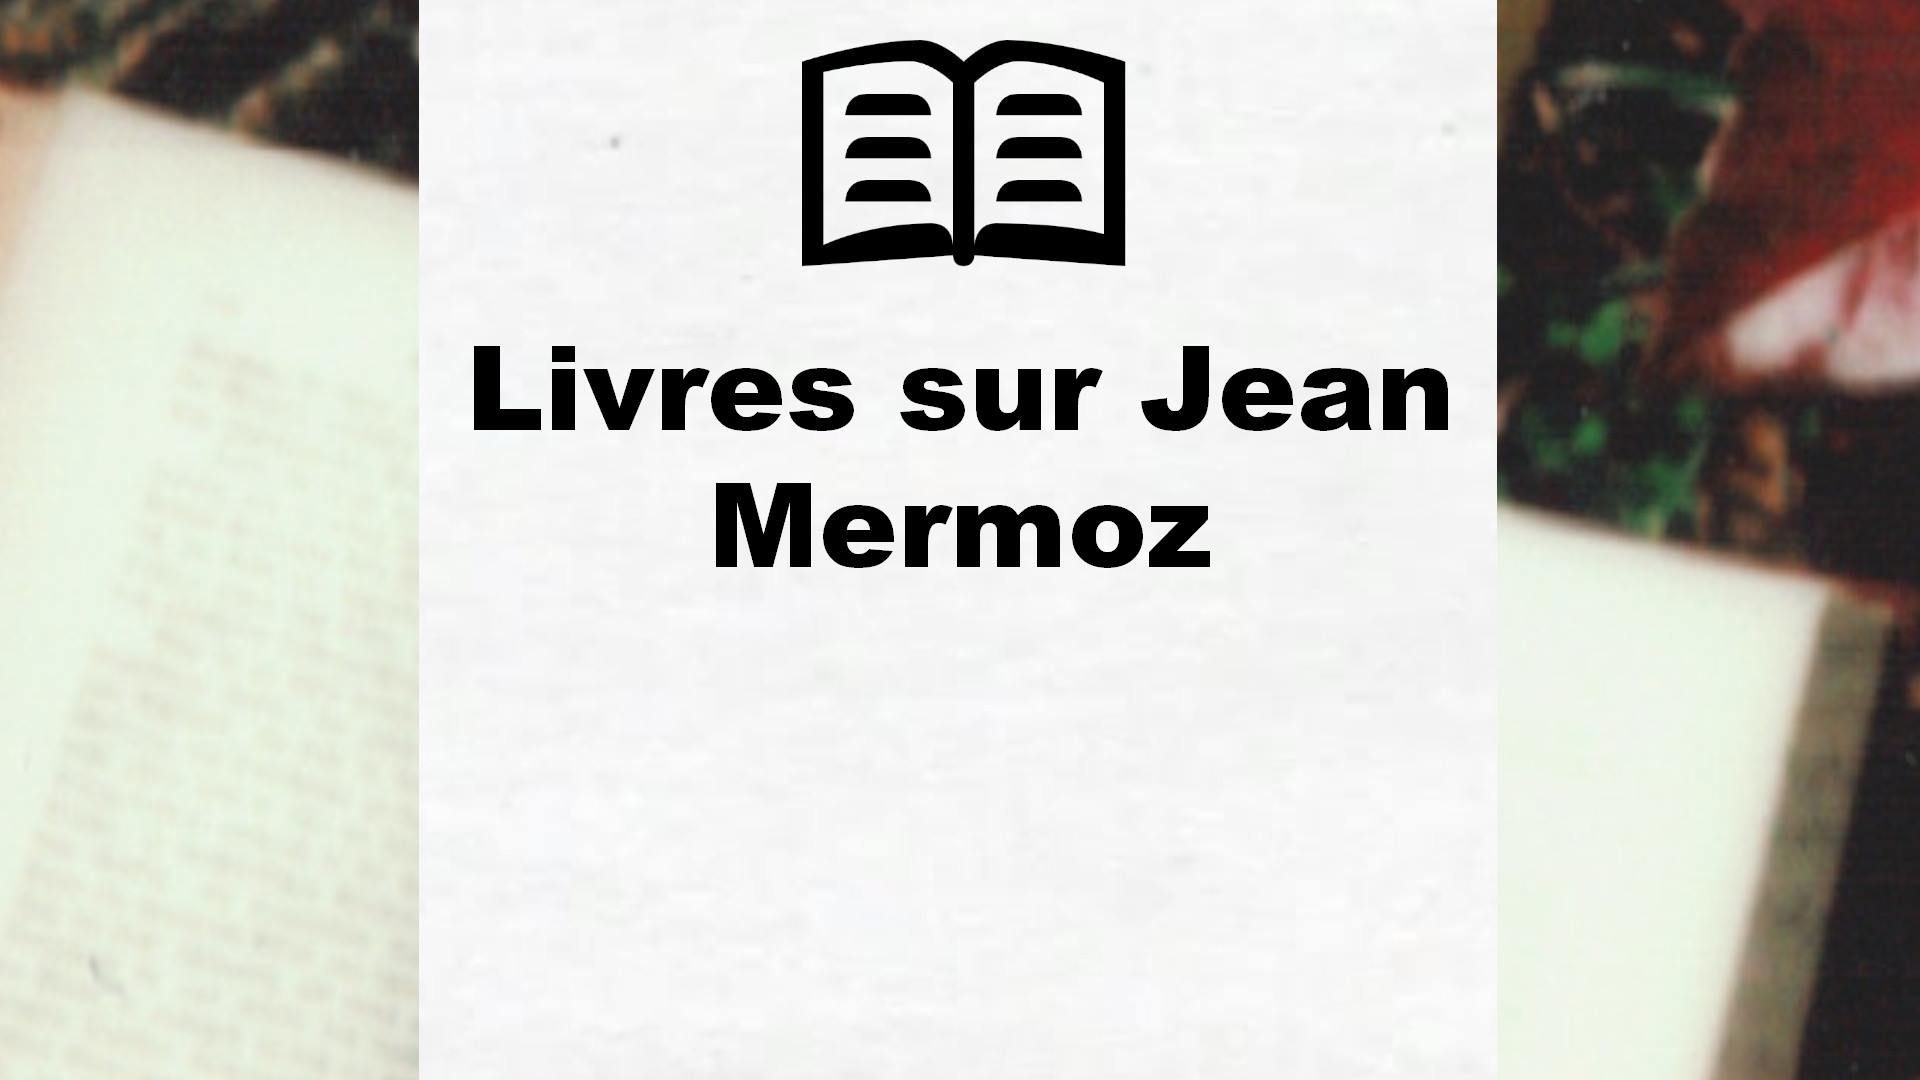 Livres sur Jean Mermoz